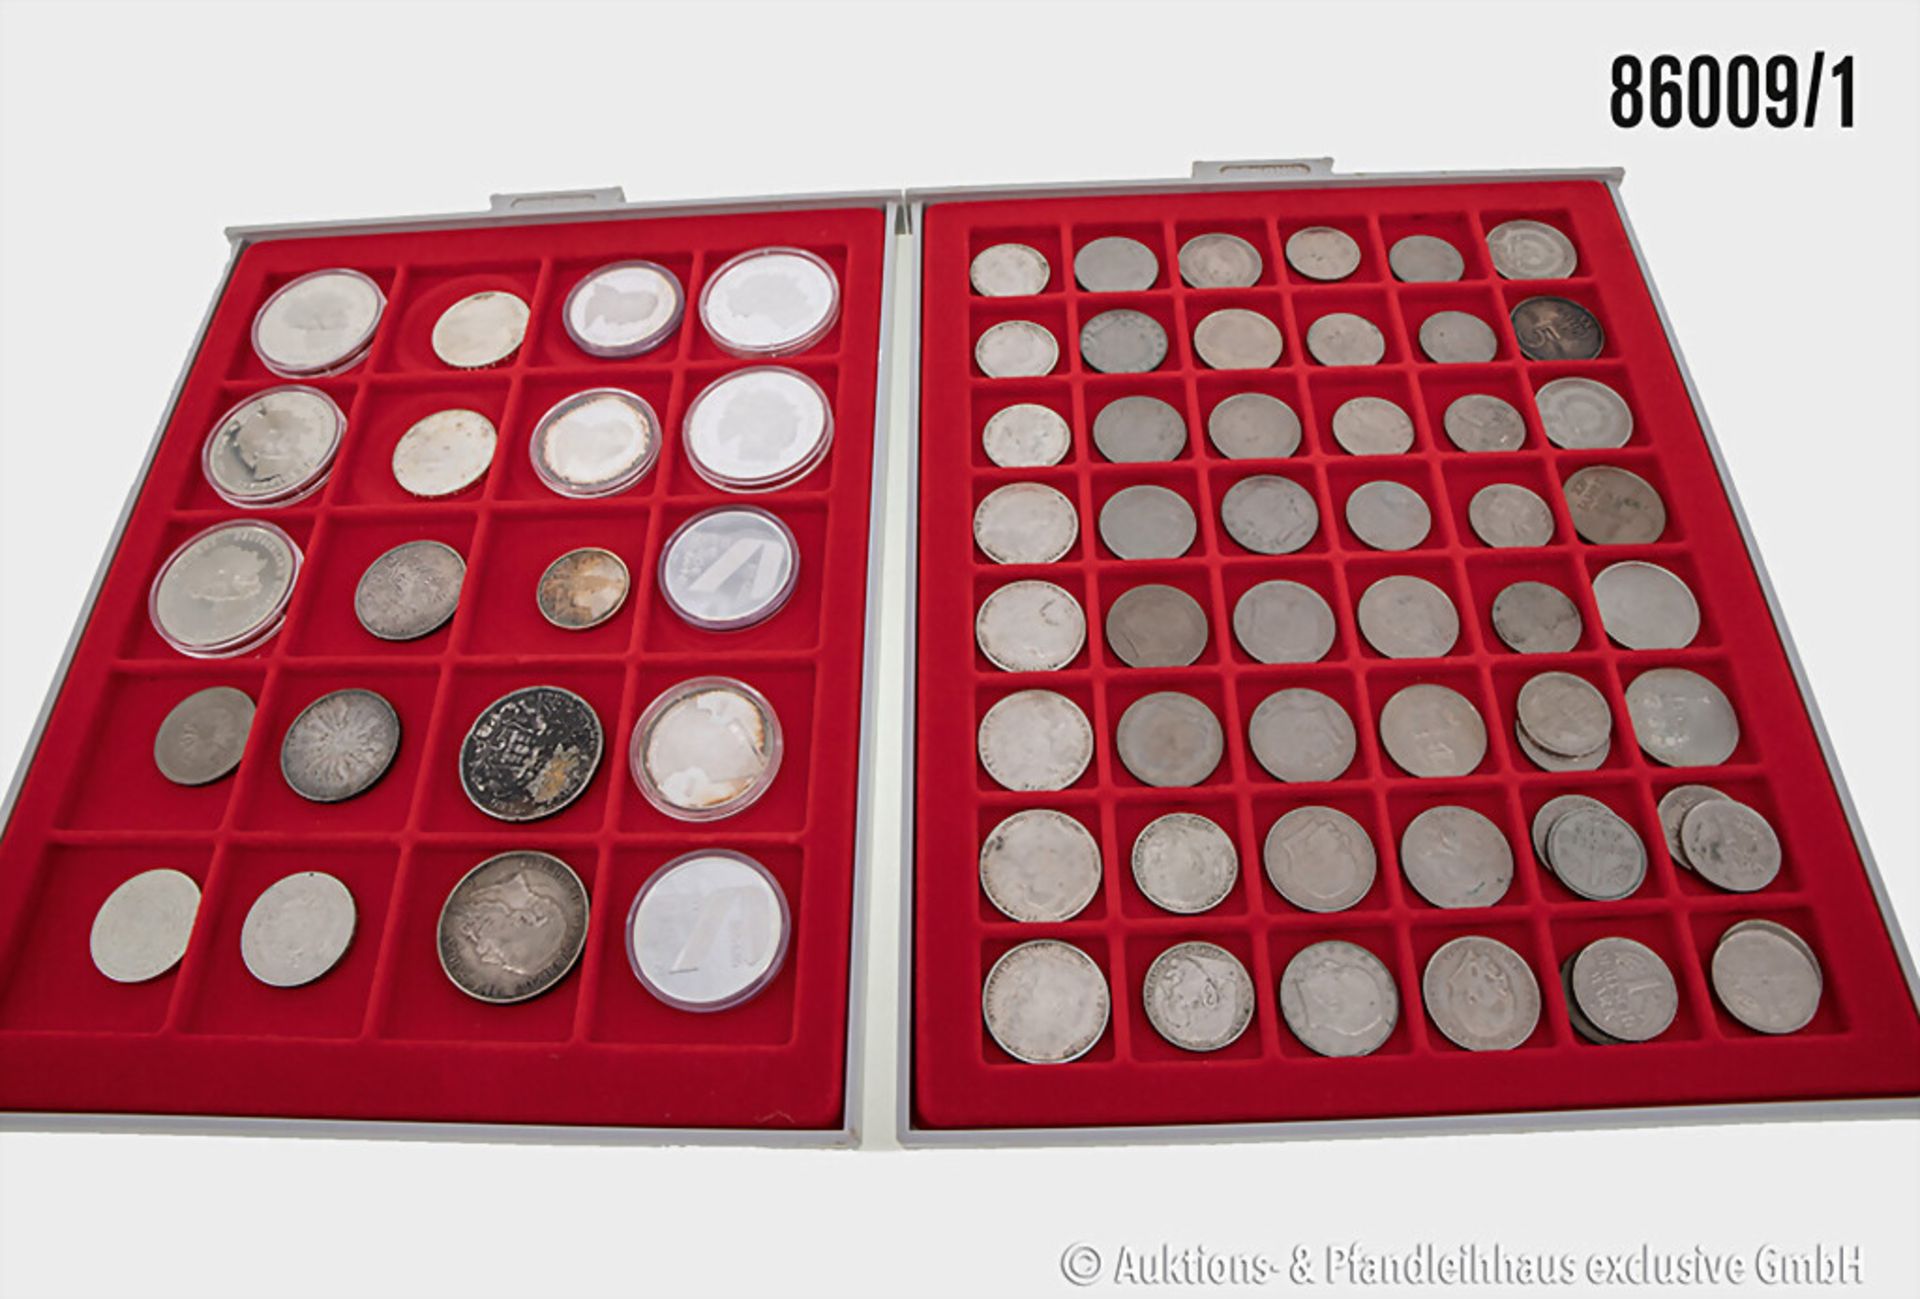 Konvolut Münzen in 6 Lindner Münzboxen, verschiedene Münzen Europa/Welt sowie 3 Münzen ...